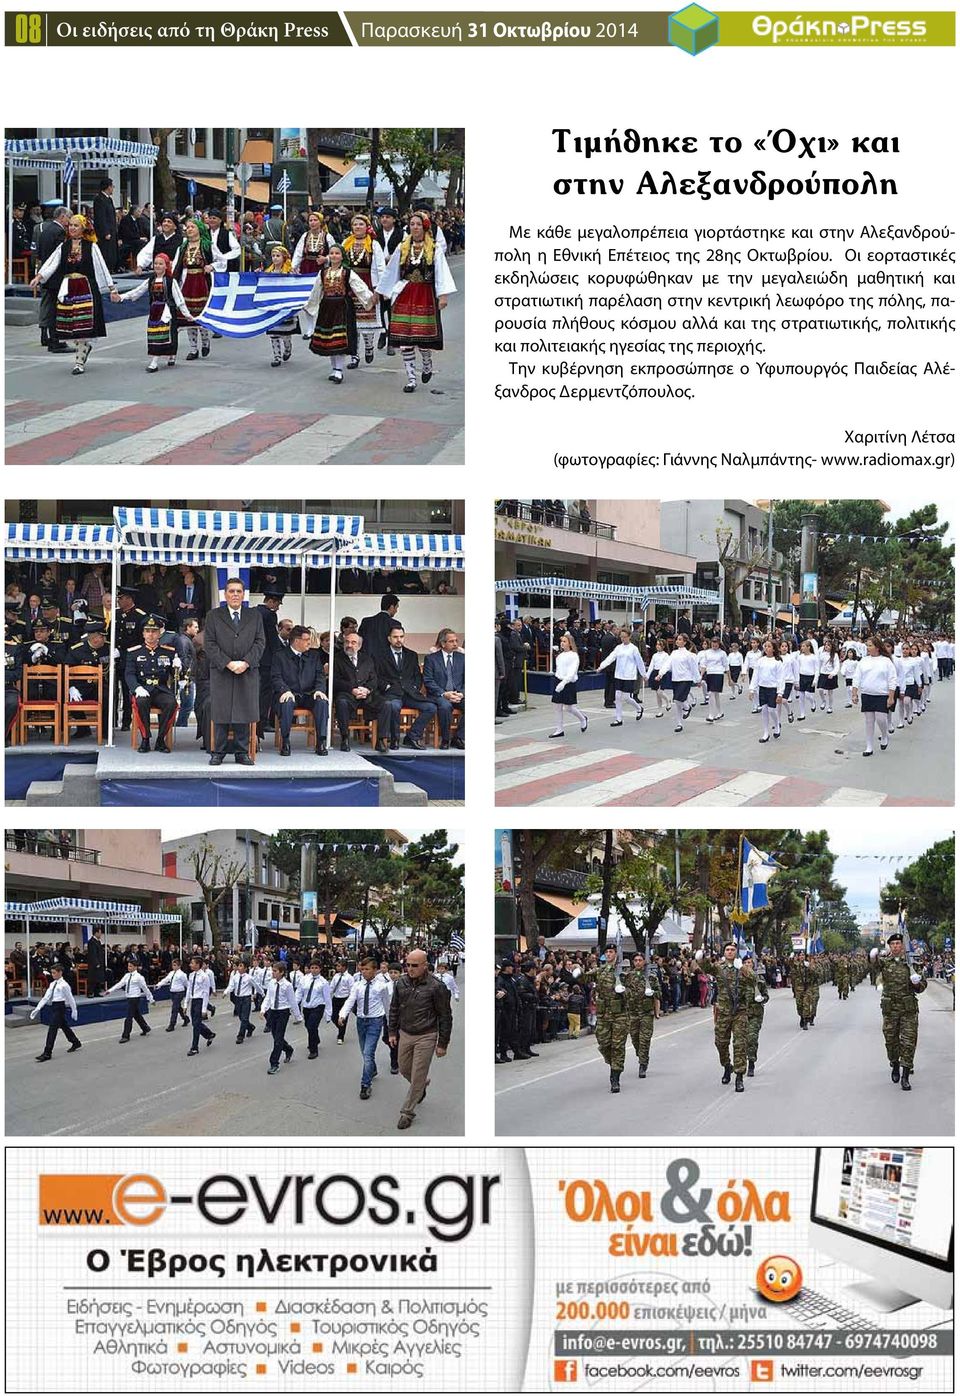 Οι εορταστικές εκδηλώσεις κορυφώθηκαν με την μεγαλειώδη μαθητική και στρατιωτική παρέλαση στην κεντρική λεωφόρο της πόλης, παρουσία πλήθους